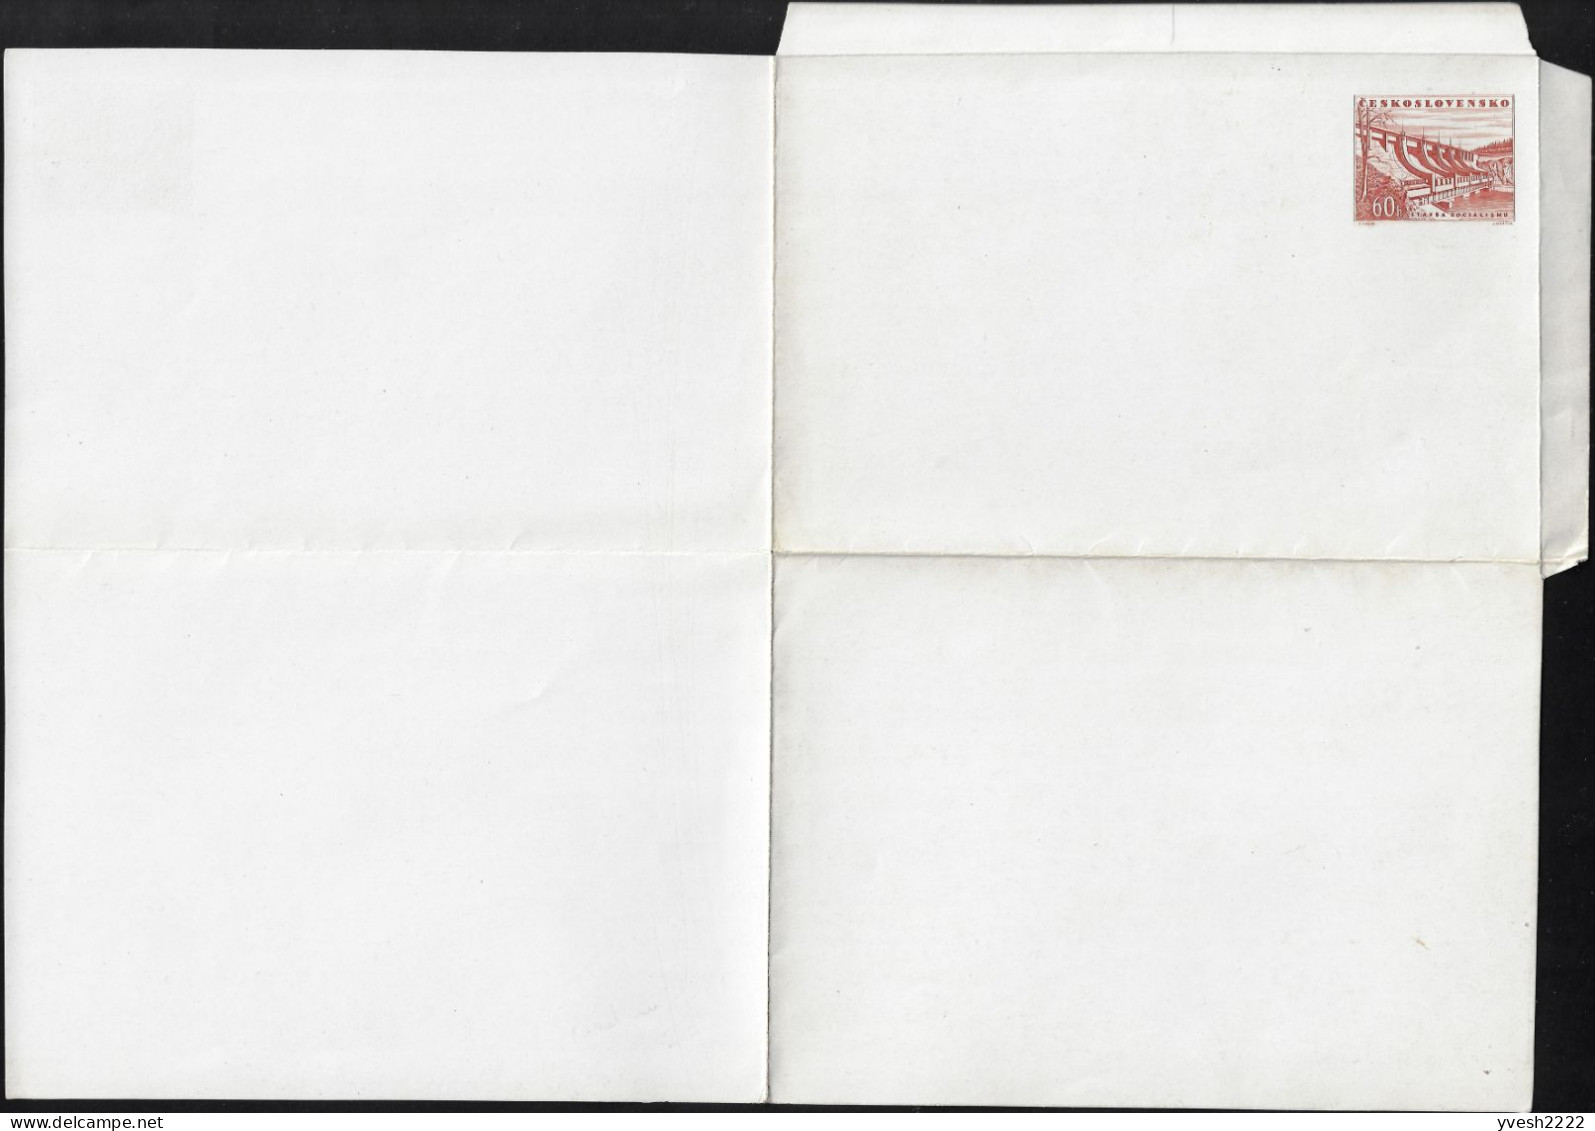 Tchécoslovaquie 1953 Michel F1b ??? Carte-lettre Sans La Moindre Inscription, Papier Craie. Barrage Communiste - Water